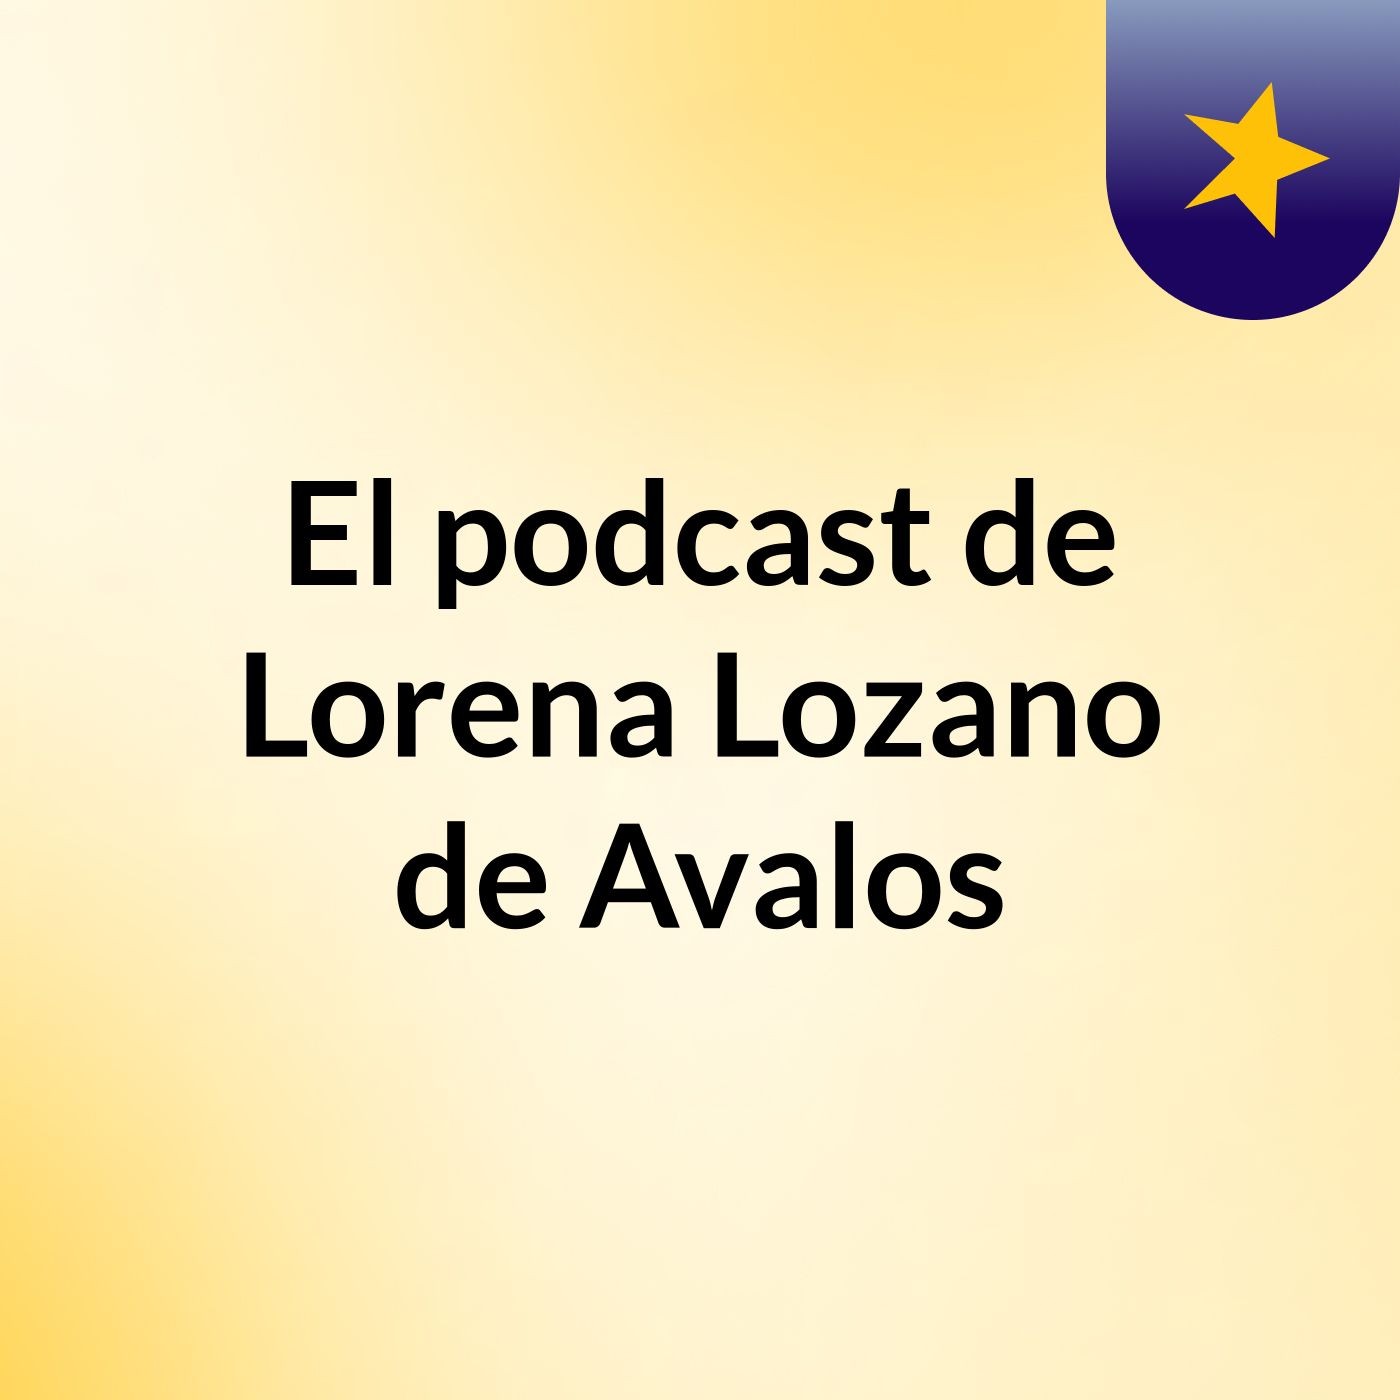 El podcast de Lorena Lozano de Avalos